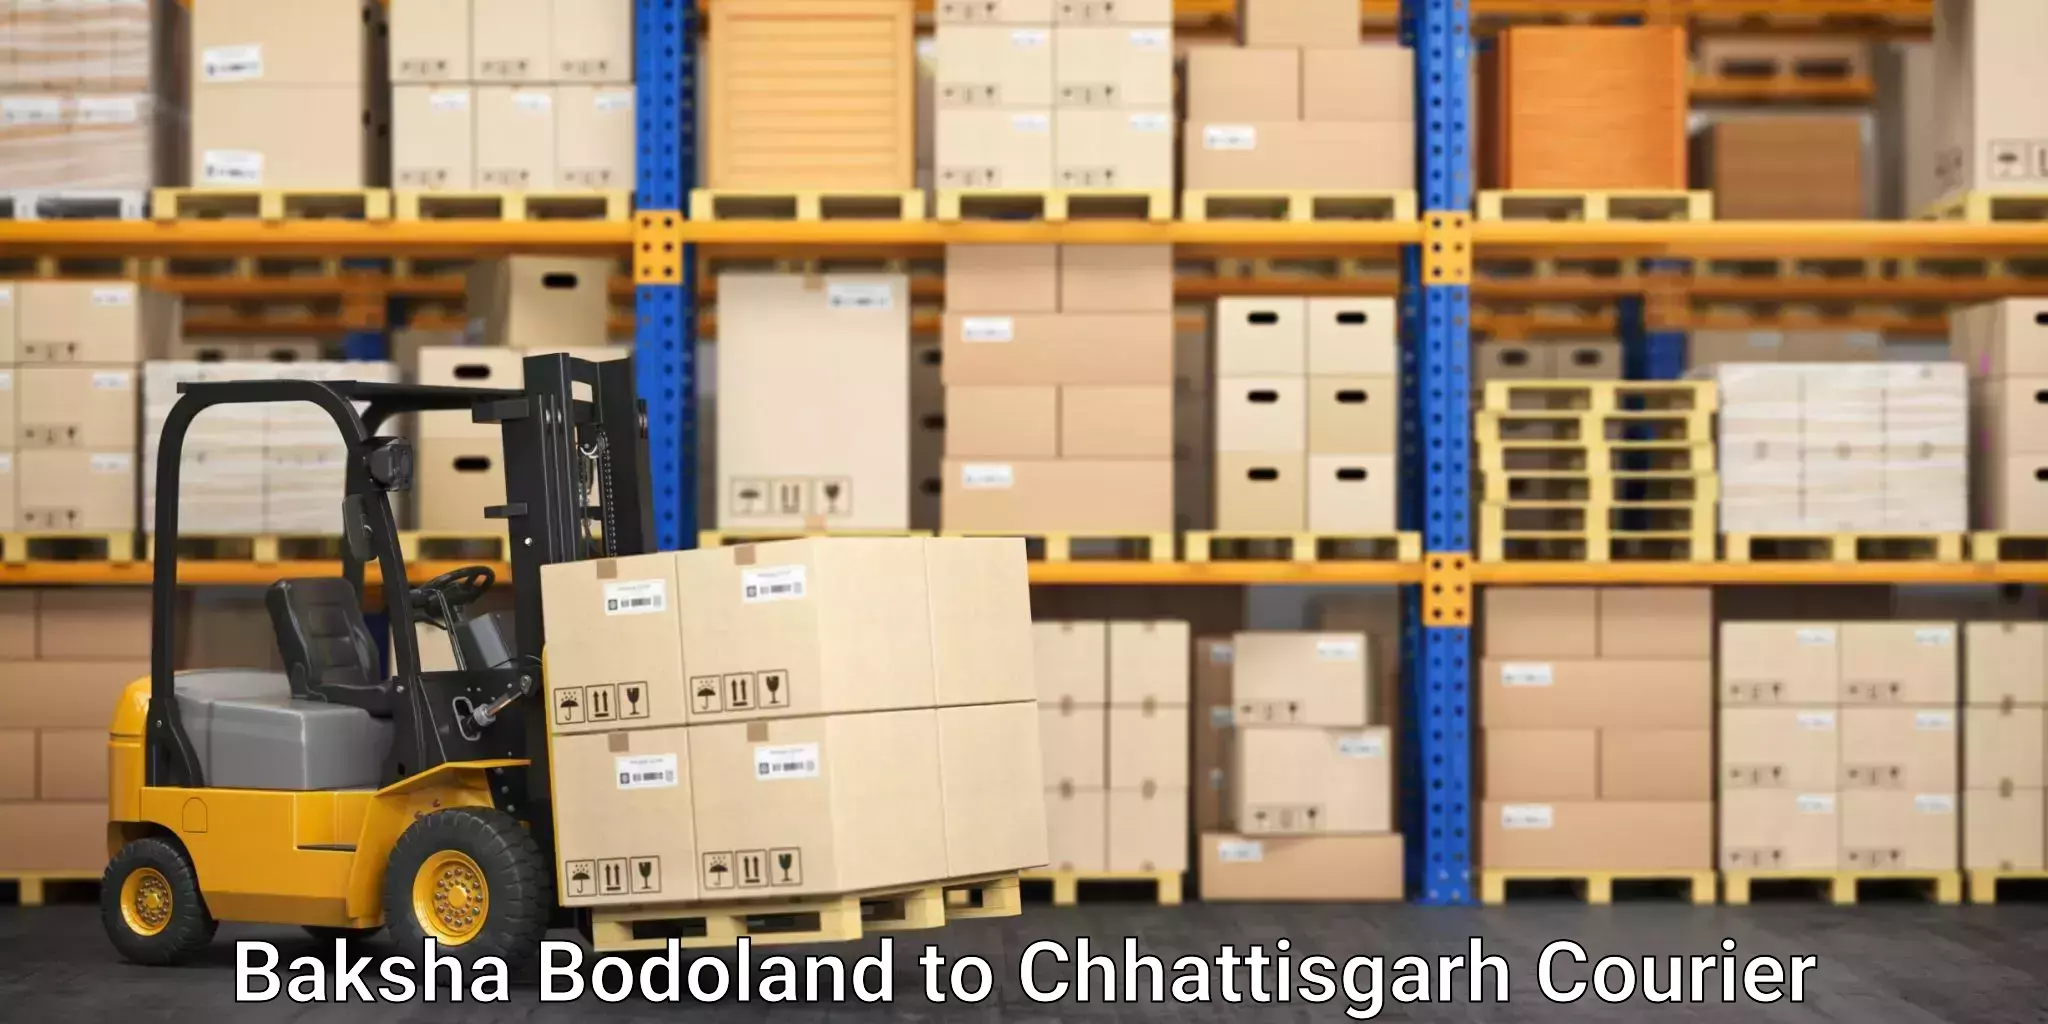 Automated parcel services Baksha Bodoland to Patan Durg